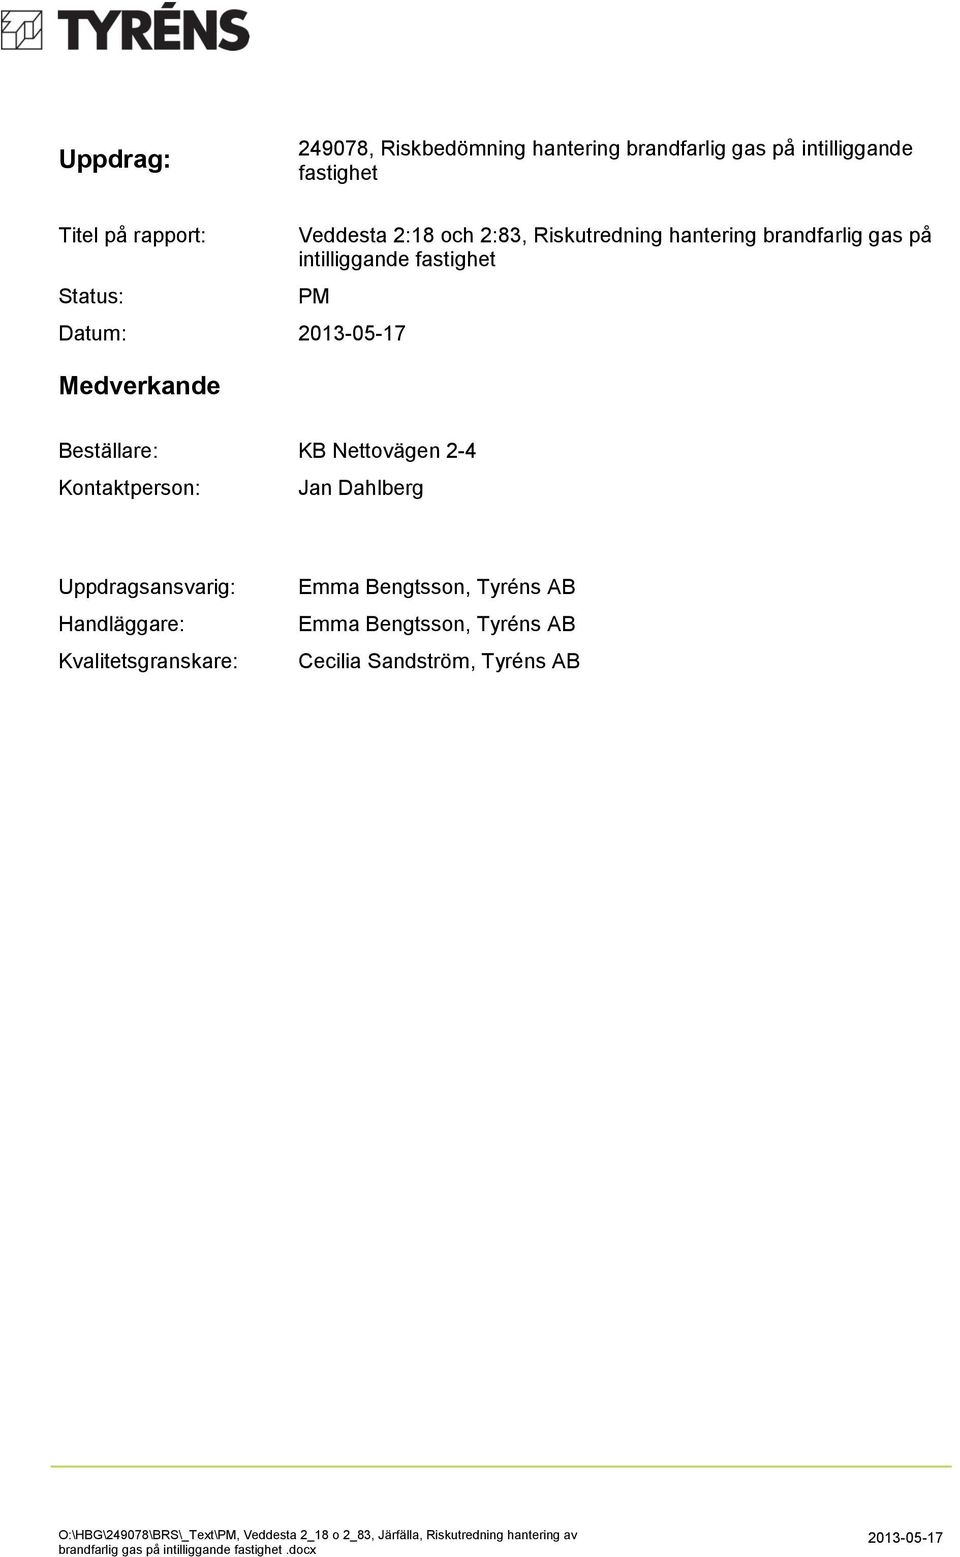 Uppdragsansvarig: Handläggare: Kvalitetsgranskare: Emma Bengtsson, Tyréns AB Emma Bengtsson, Tyréns AB Cecilia Sandström, Tyréns AB